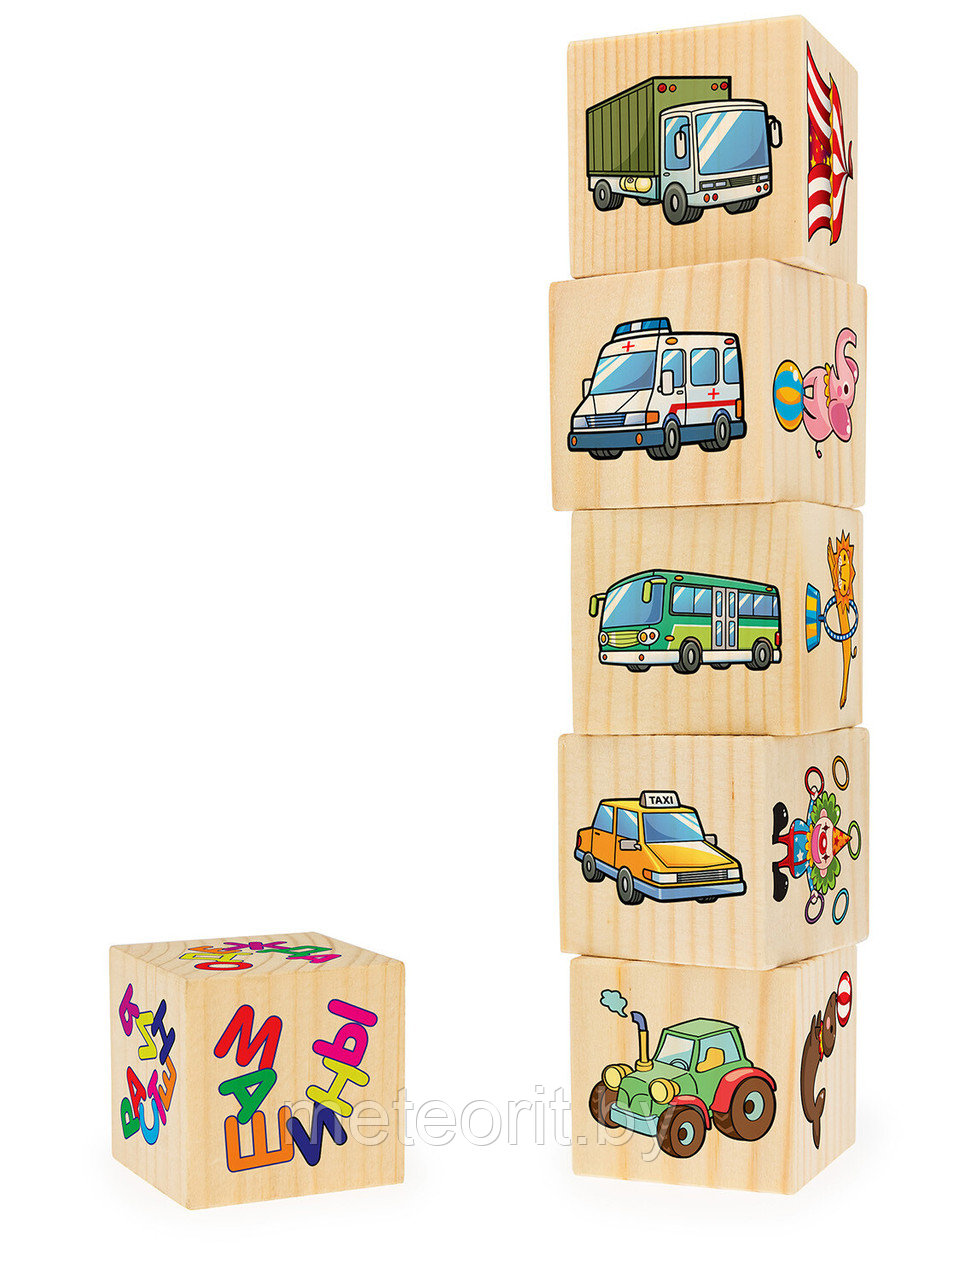 Ассоциации на кубиках №4 (машины, растения, одежда, спорт, цирк, птицы) 6 кубиков